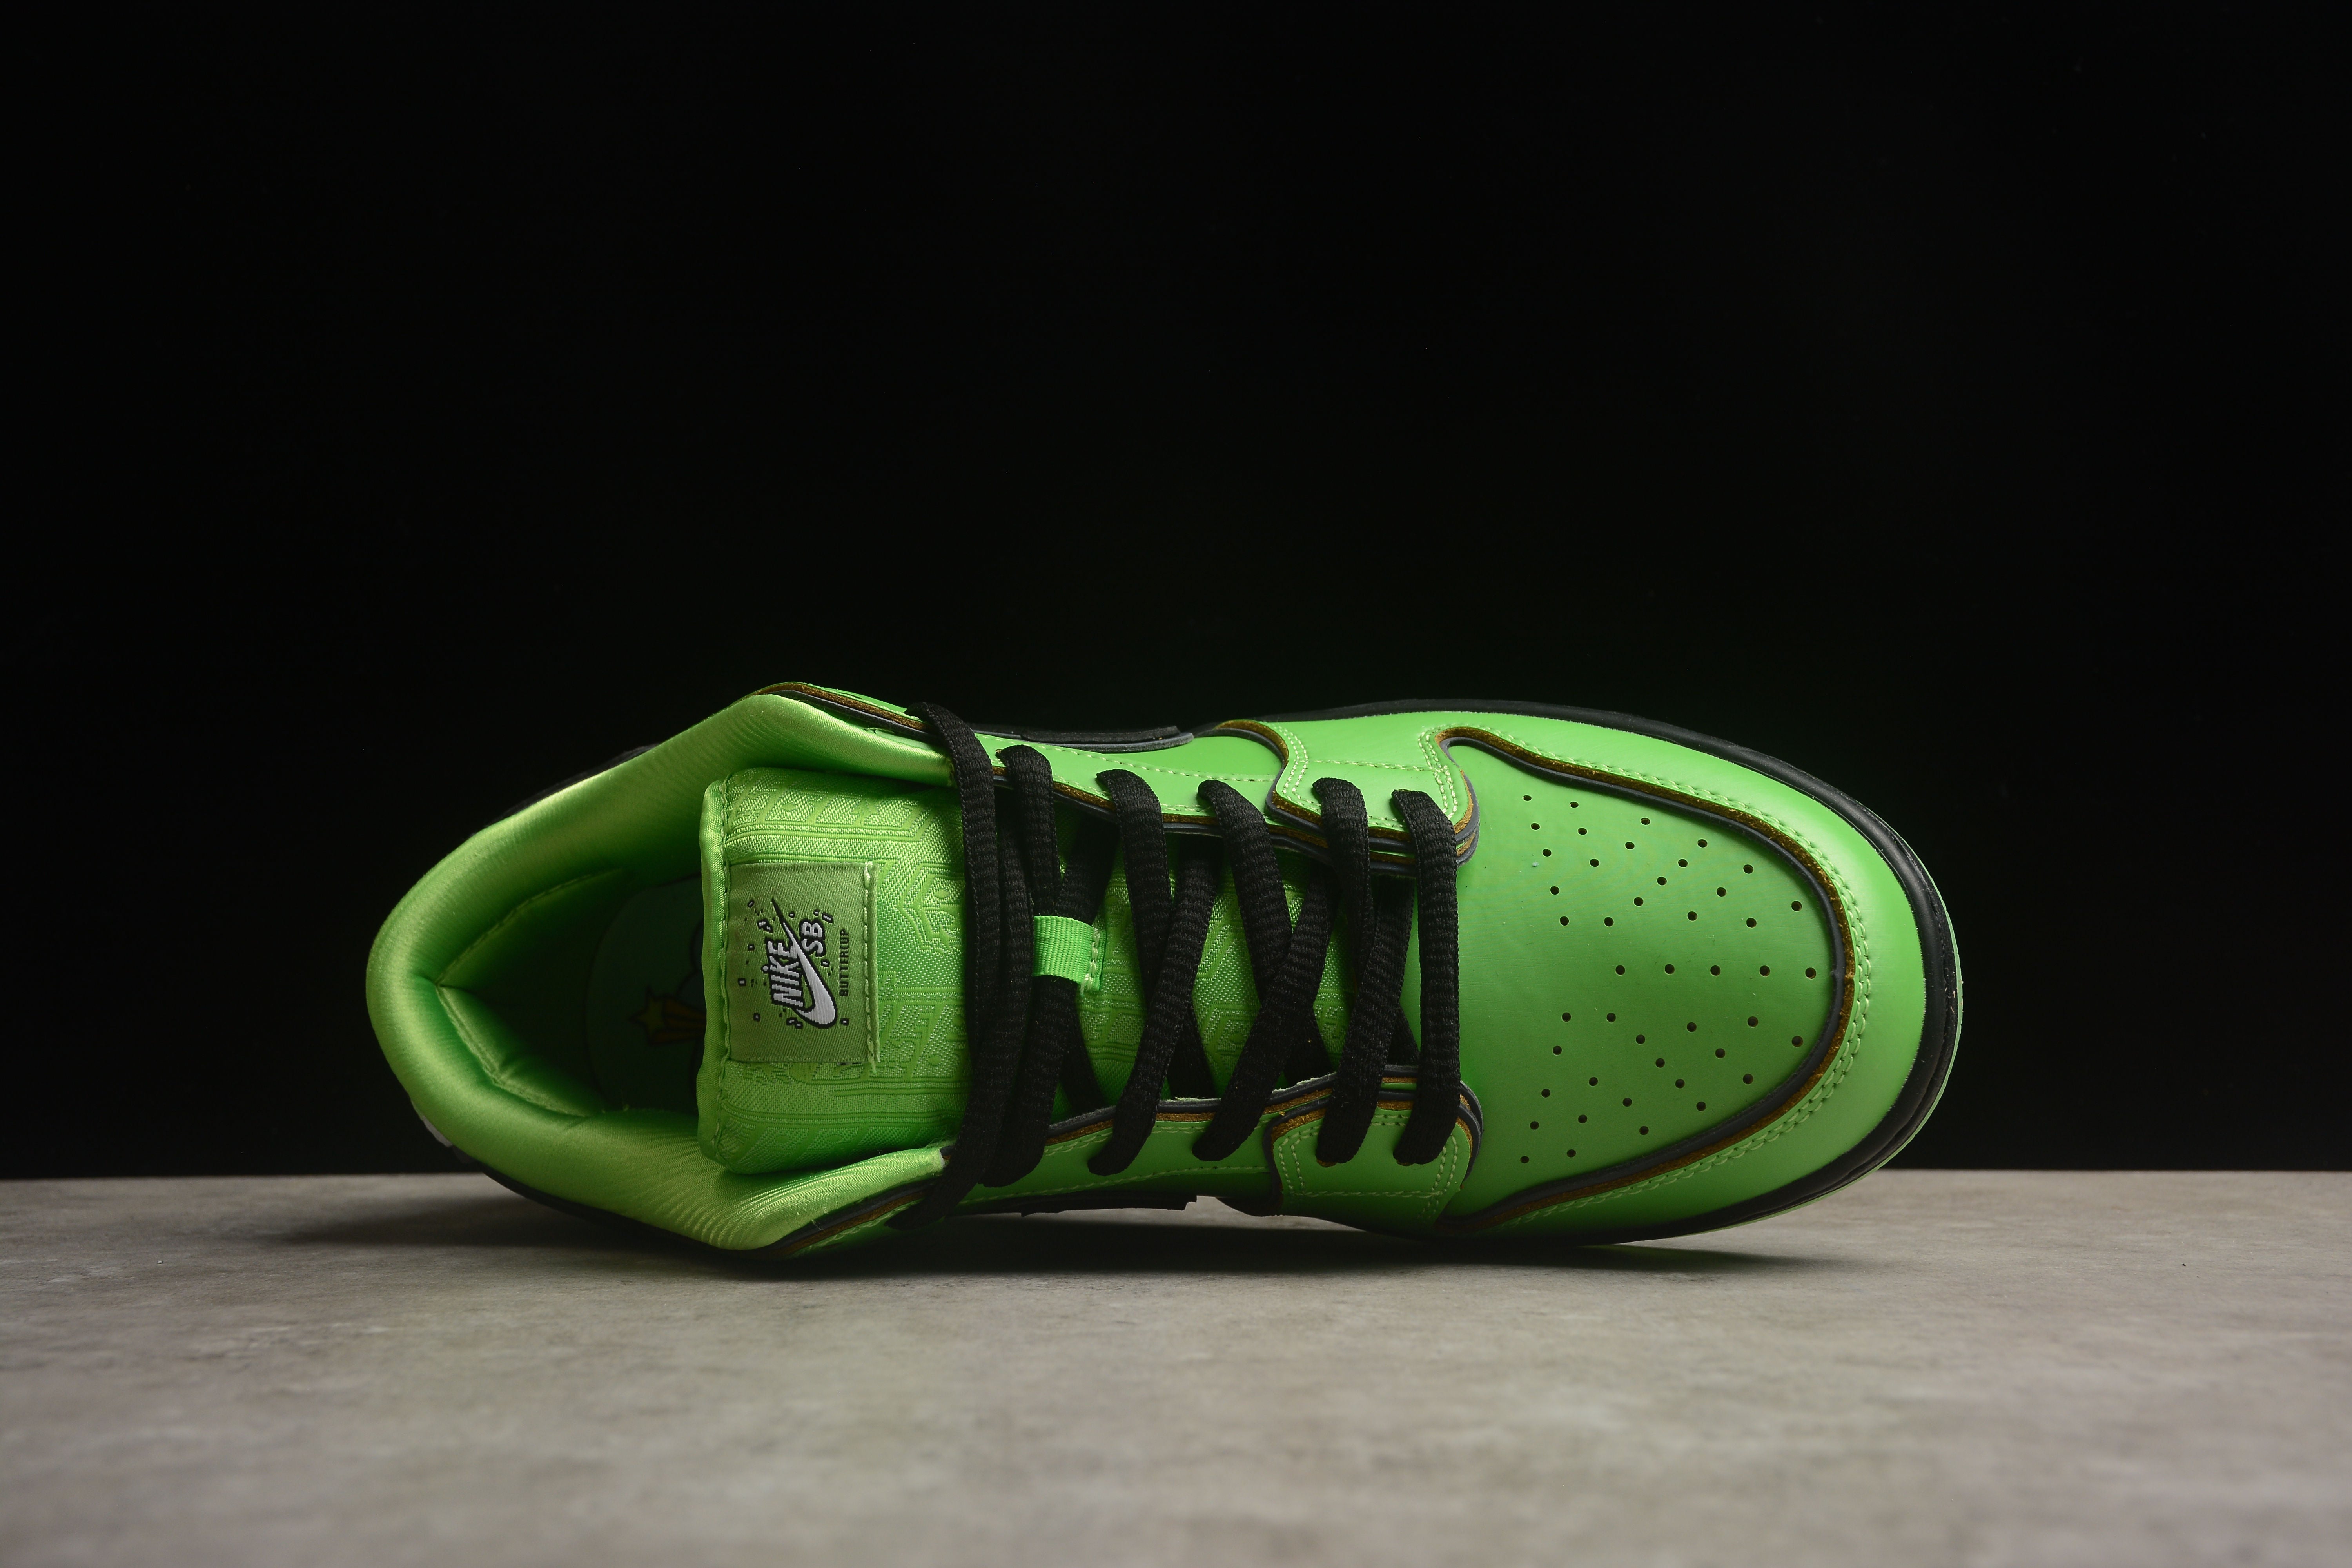 Nike SB dunk low the powerpuff girls green shoes